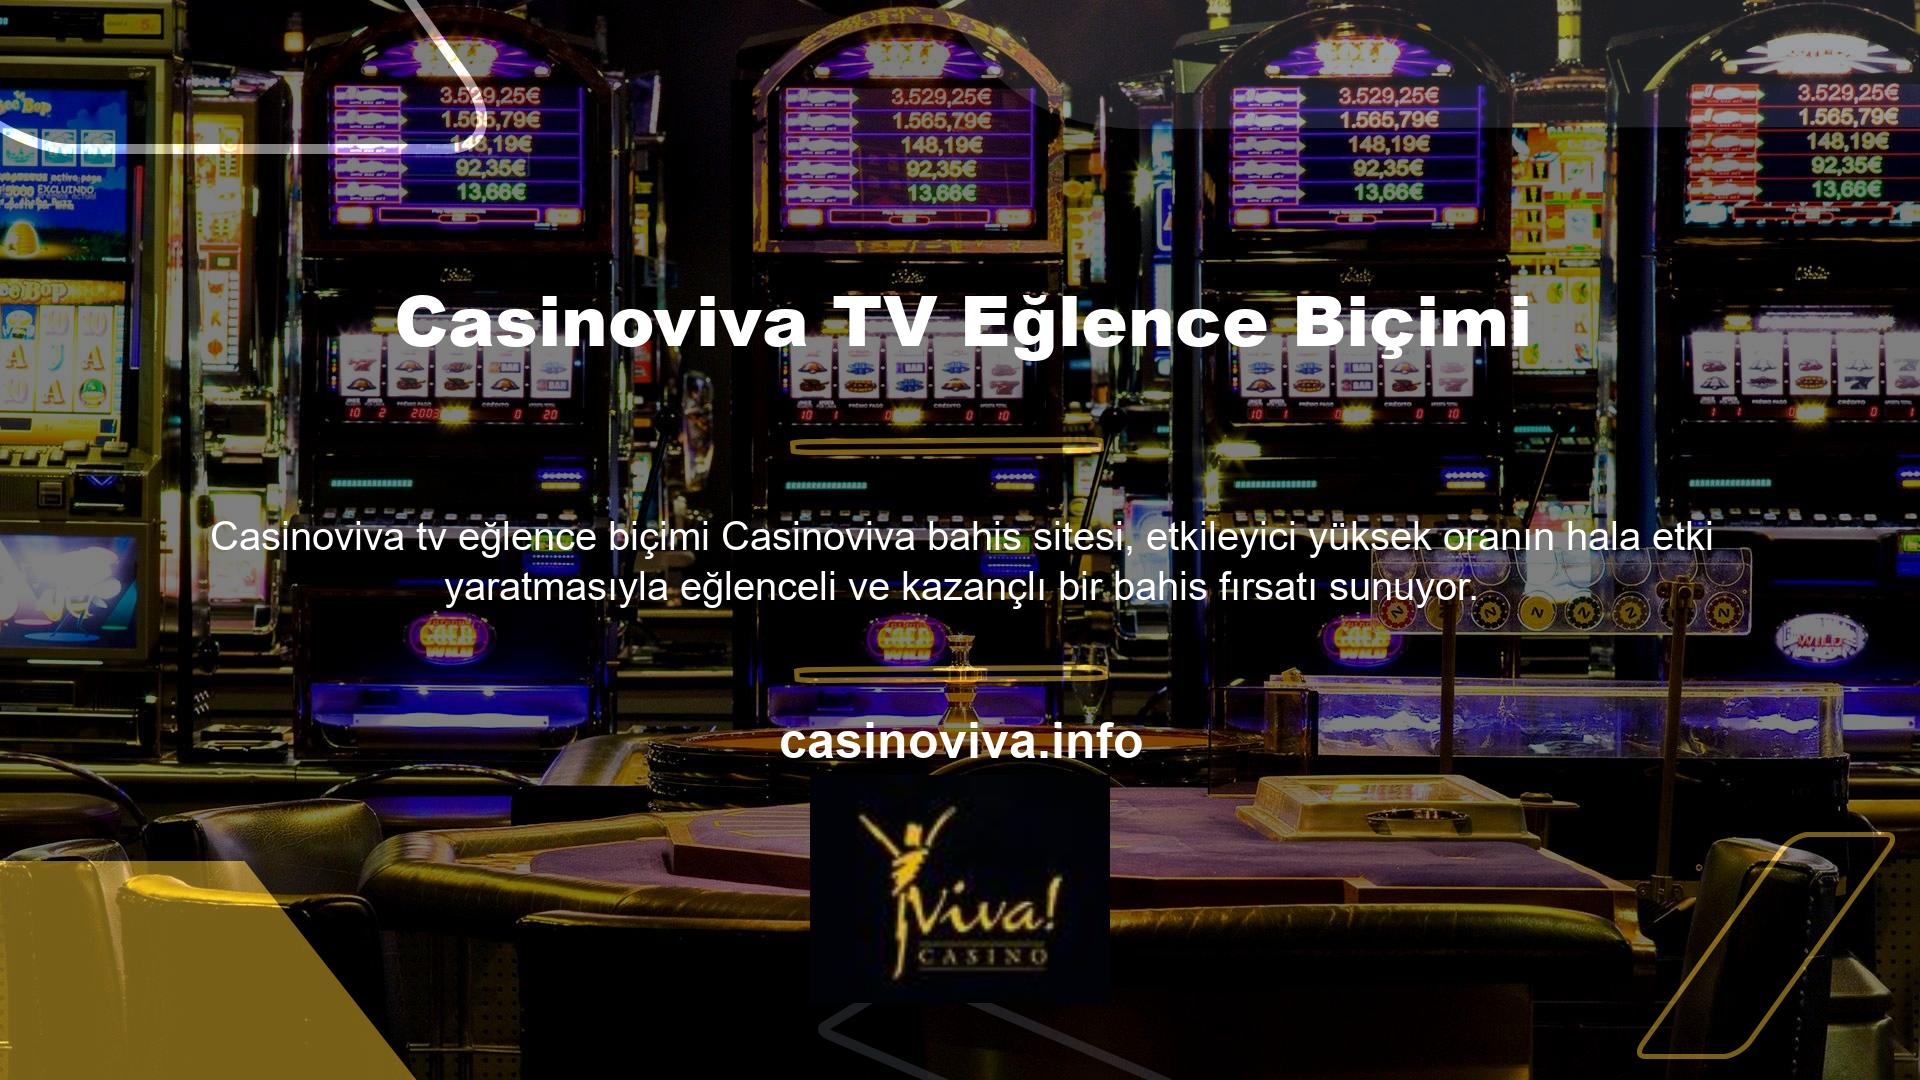 Spor bahislerinden casino oyunlarına kadar pek çok kuponu bir araya getiren bu site, günün her saatinde para kazanmanıza olanak sağlıyor